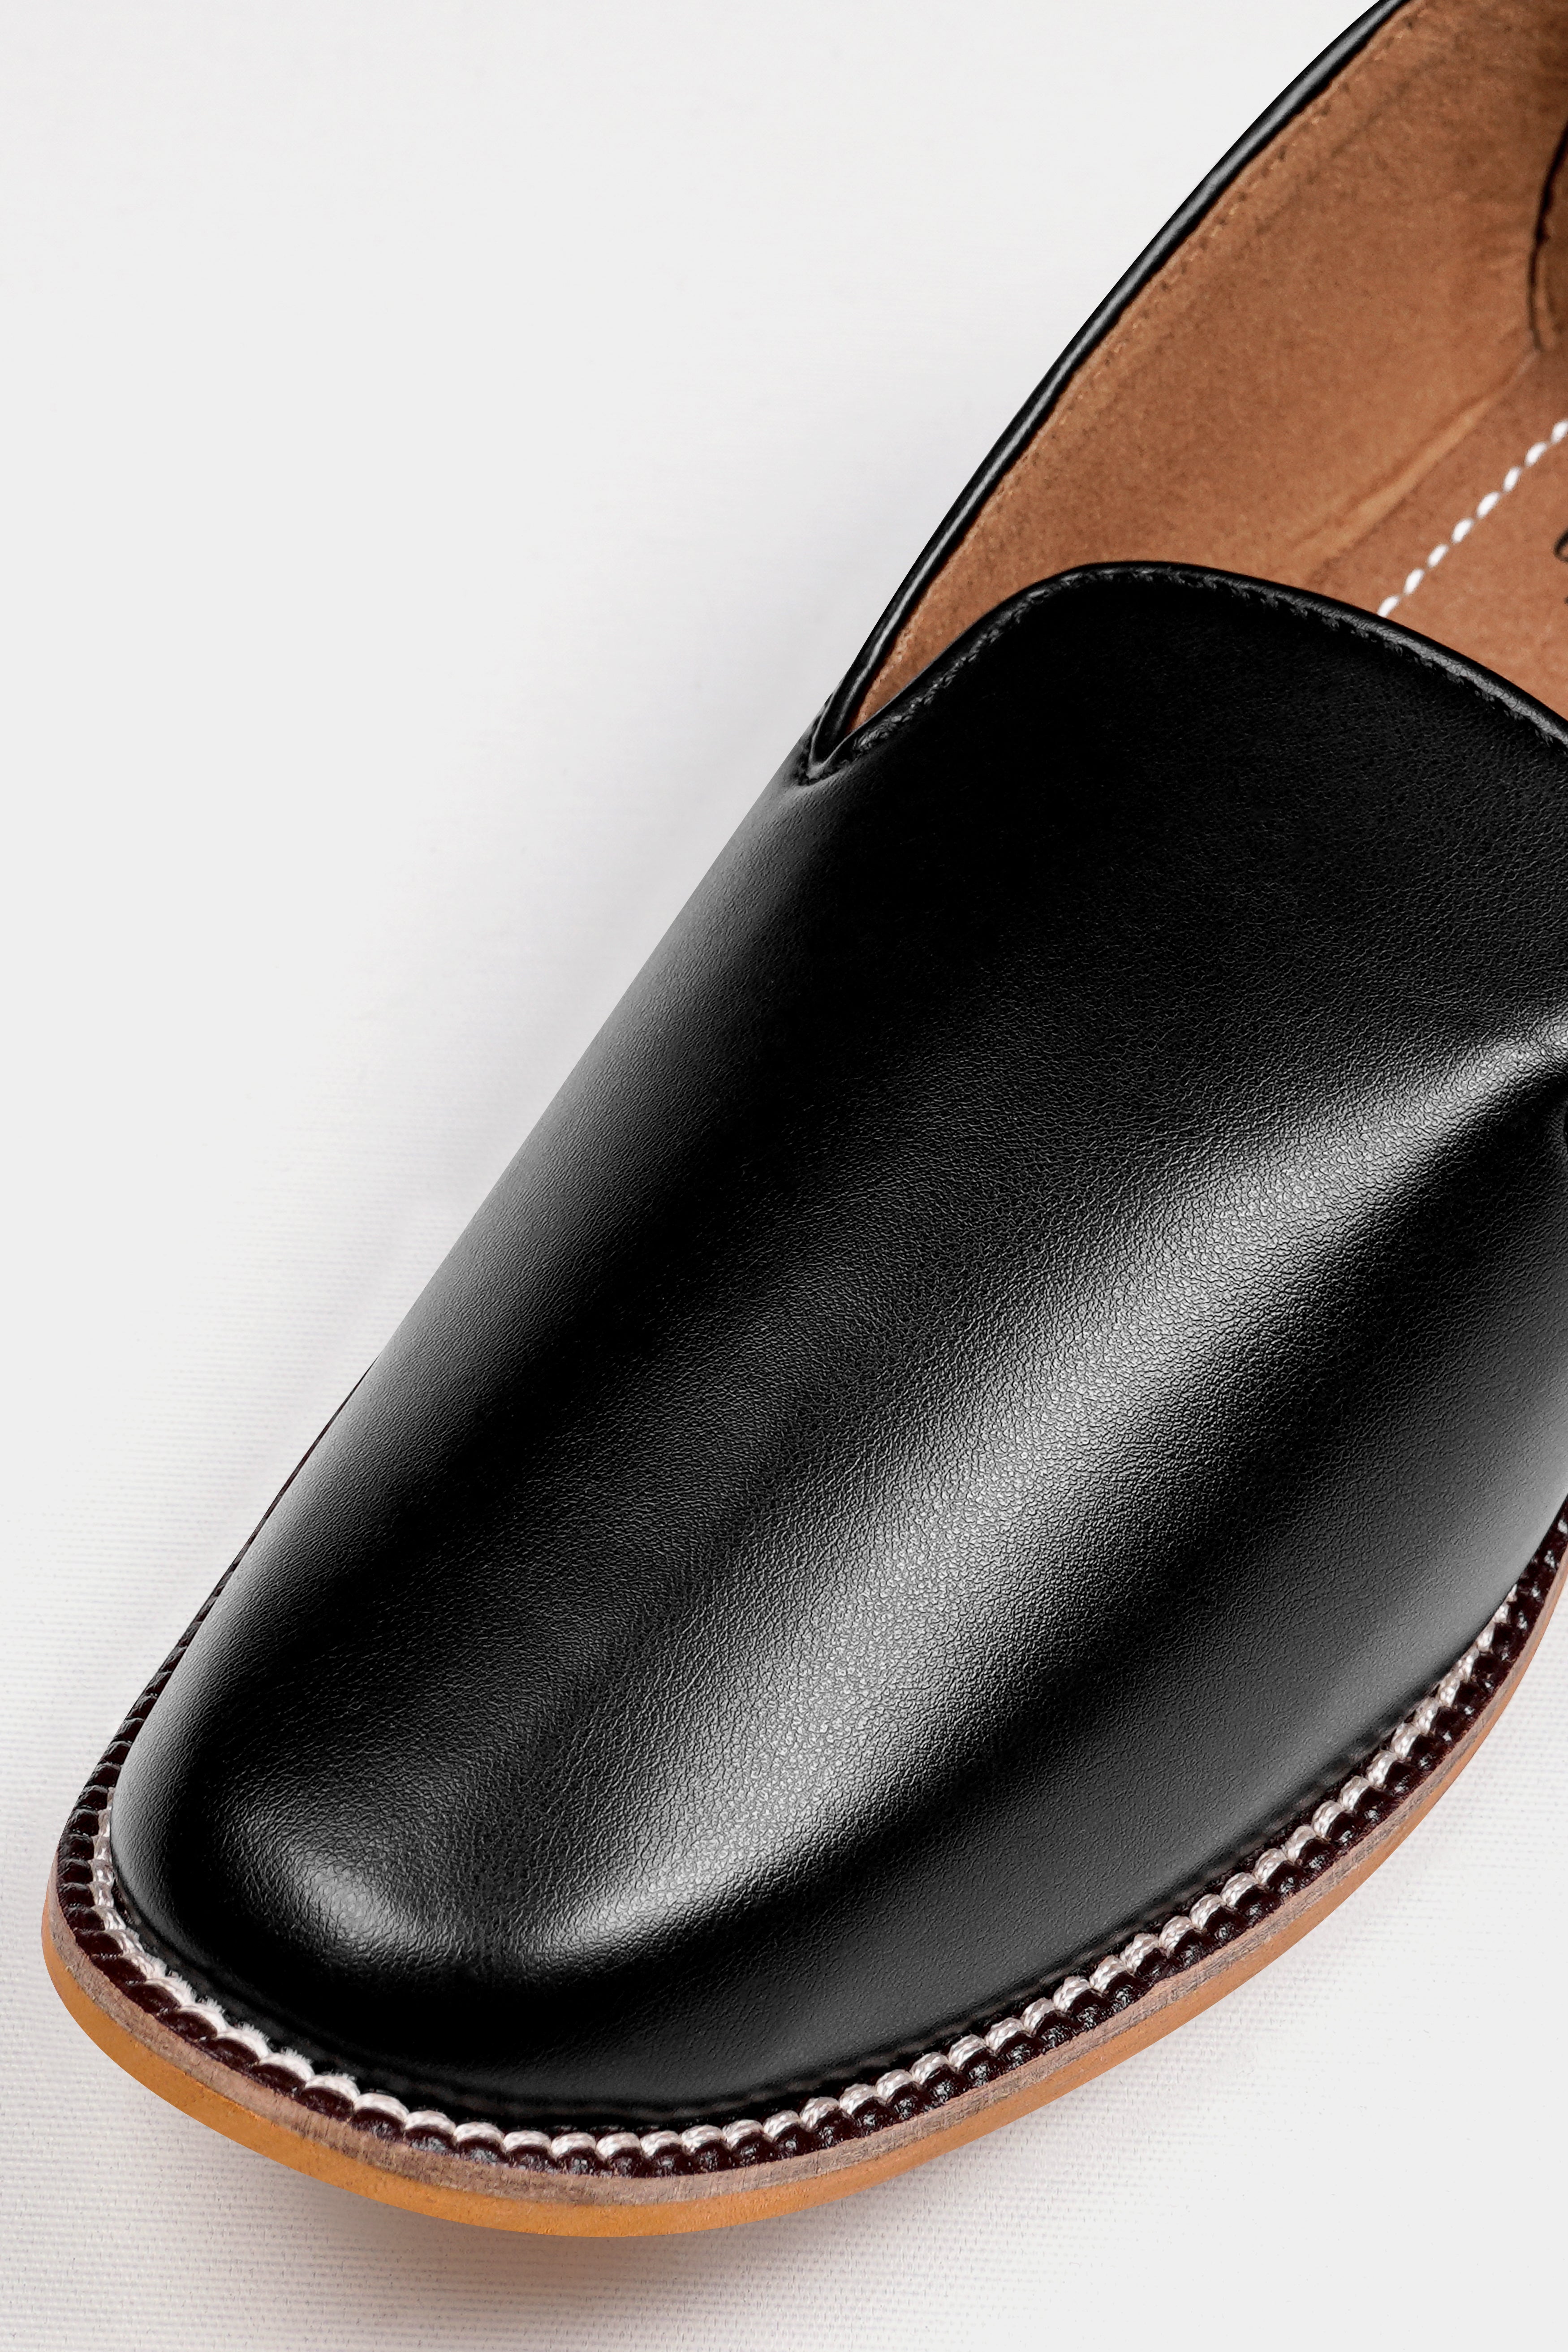 Jade Black Vegan Leather Hand Stitched Mojri Slip-On Shoes FT148-6, FT148-7, FT148-8, FT148-9, FT148-10, FT148-11